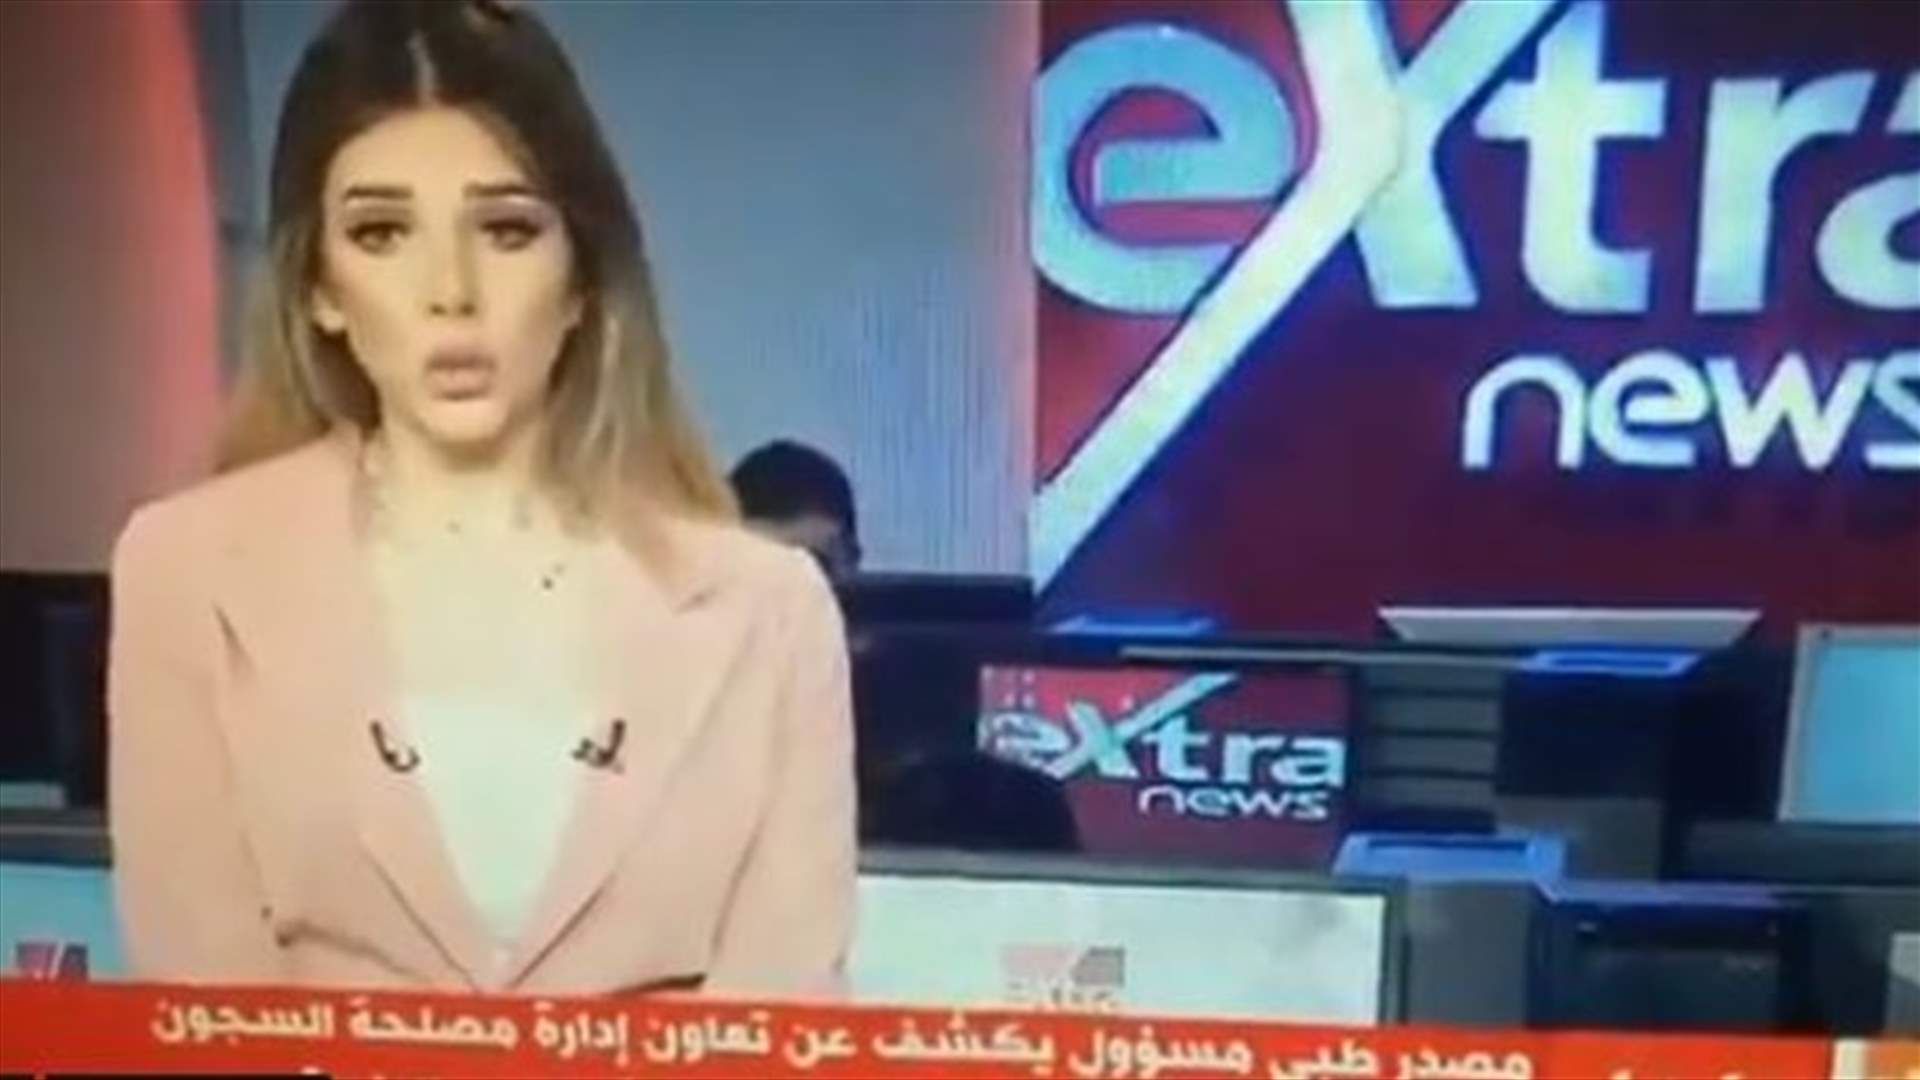 خطأ لمذيعة مصرية مباشرة على الهواء يثير الجدل (فيديو)